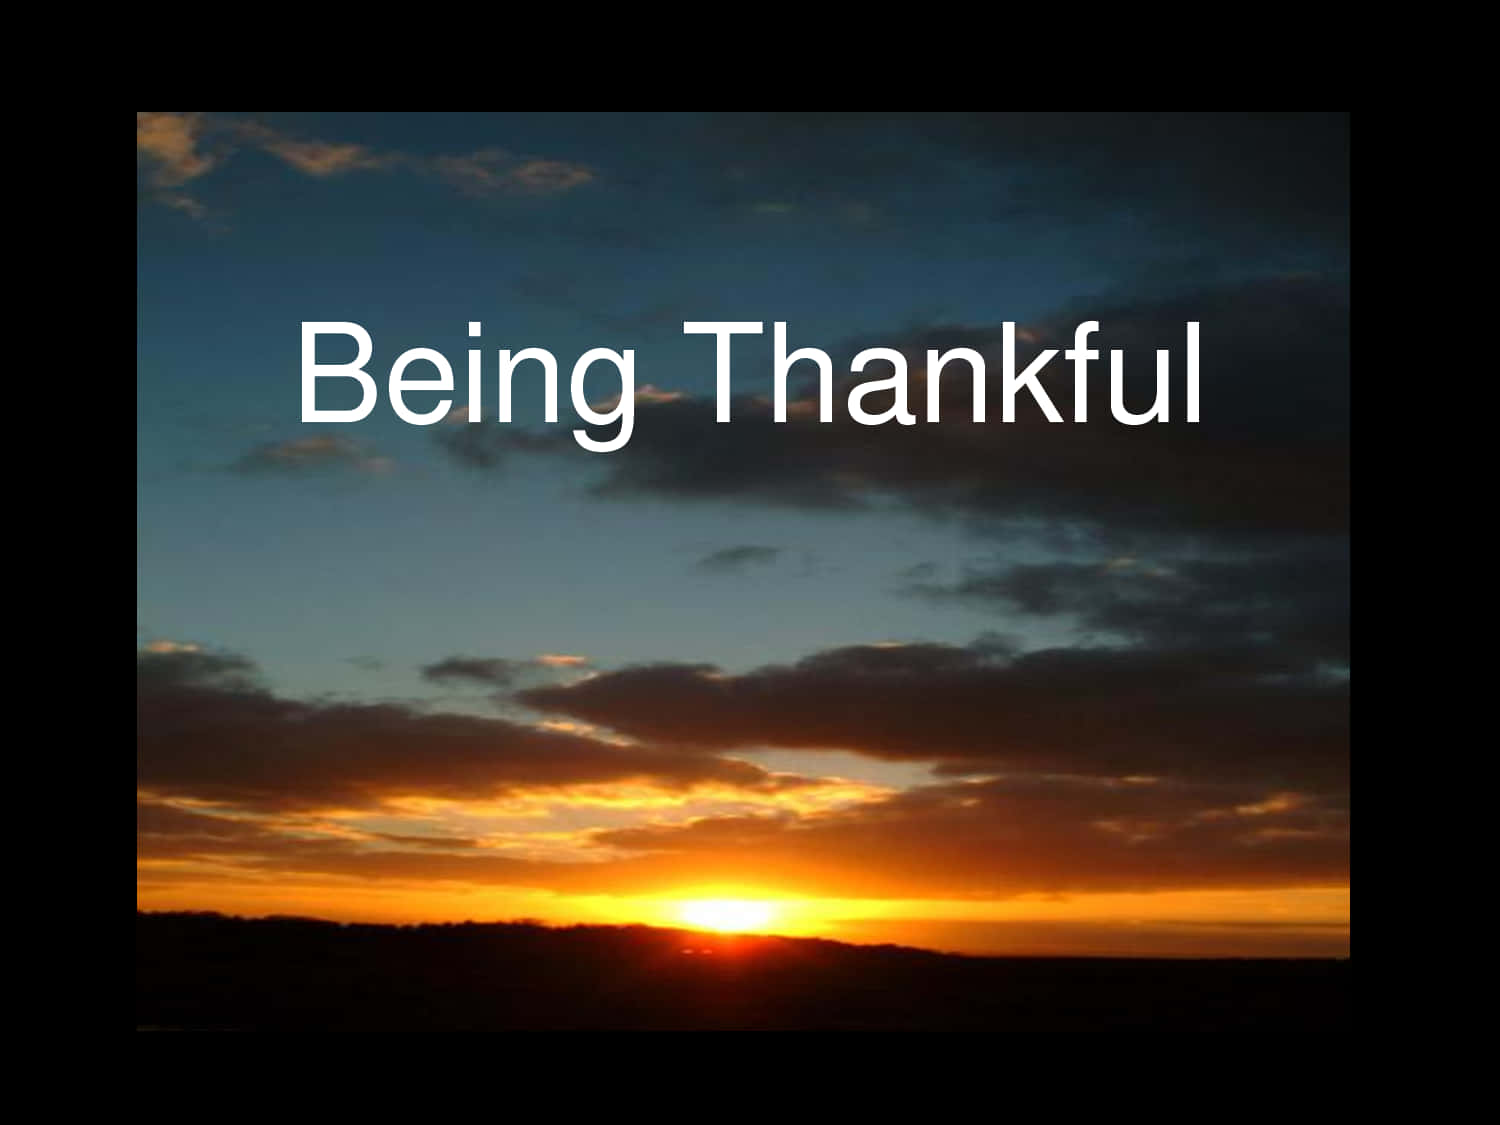 Attvara Tacksam För Allt